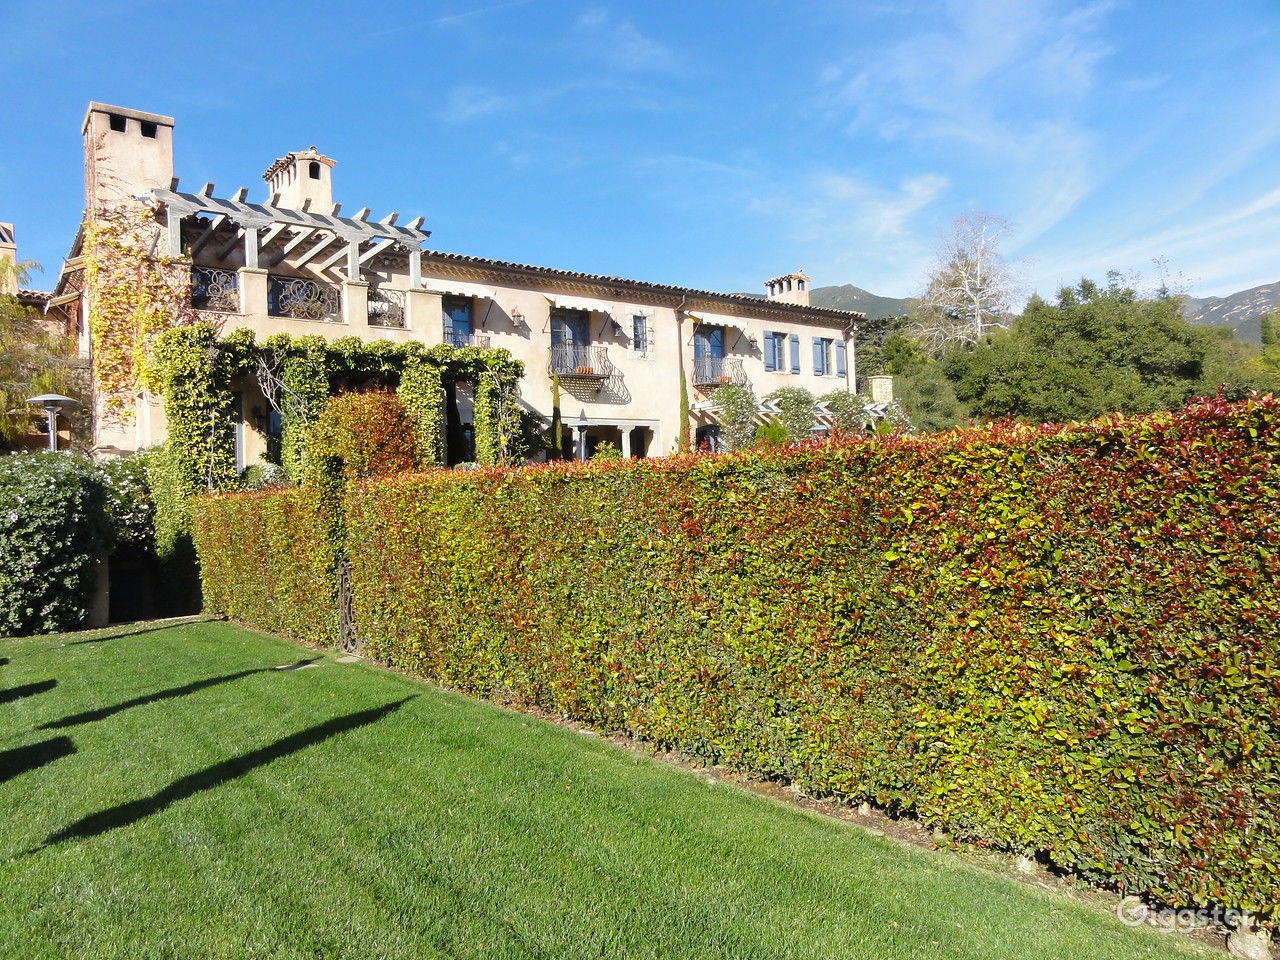 Em 2020, a mansão Montecito na Califórnia, de Harry e Meghan, foi listada para aluguel a US$ 700 por hora para sessões de fotos e videoclipes